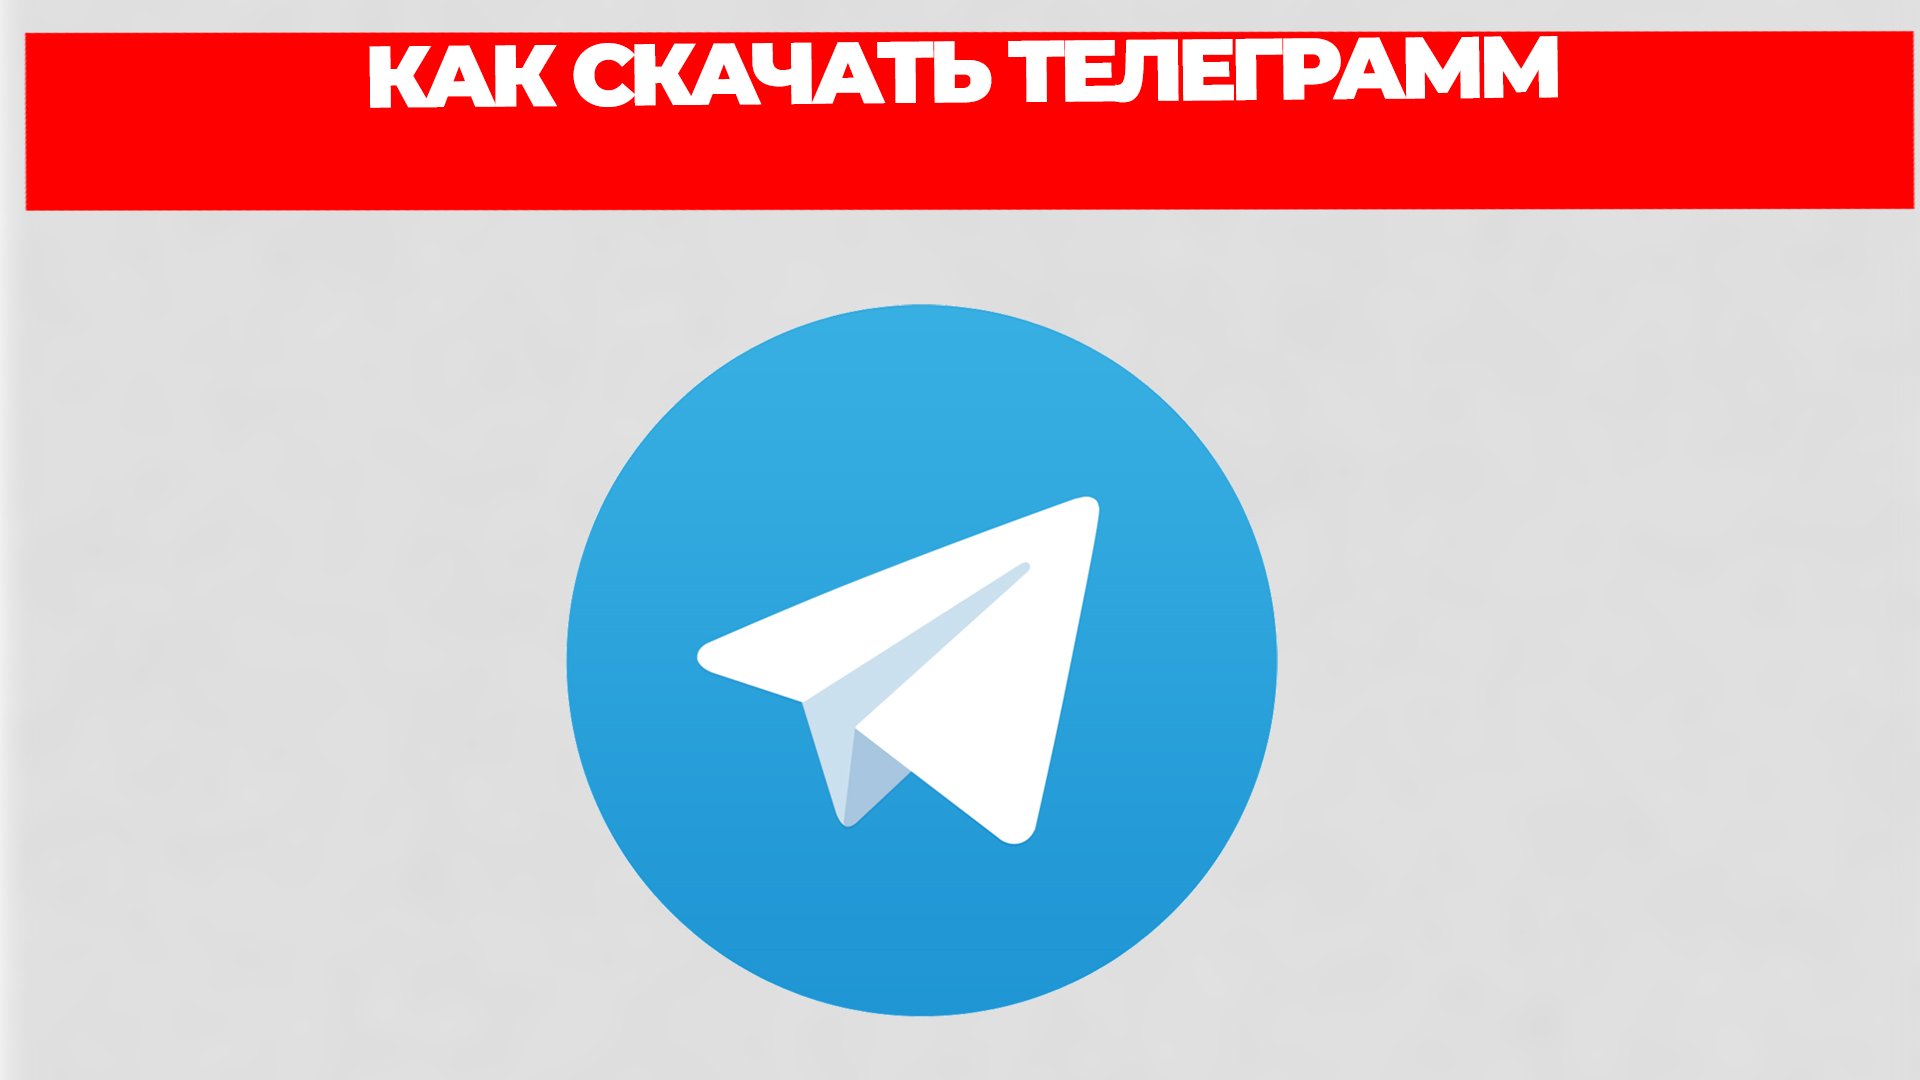 Скачать телеграмм на русском языке на компьютер бесплатно через торрент фото 115